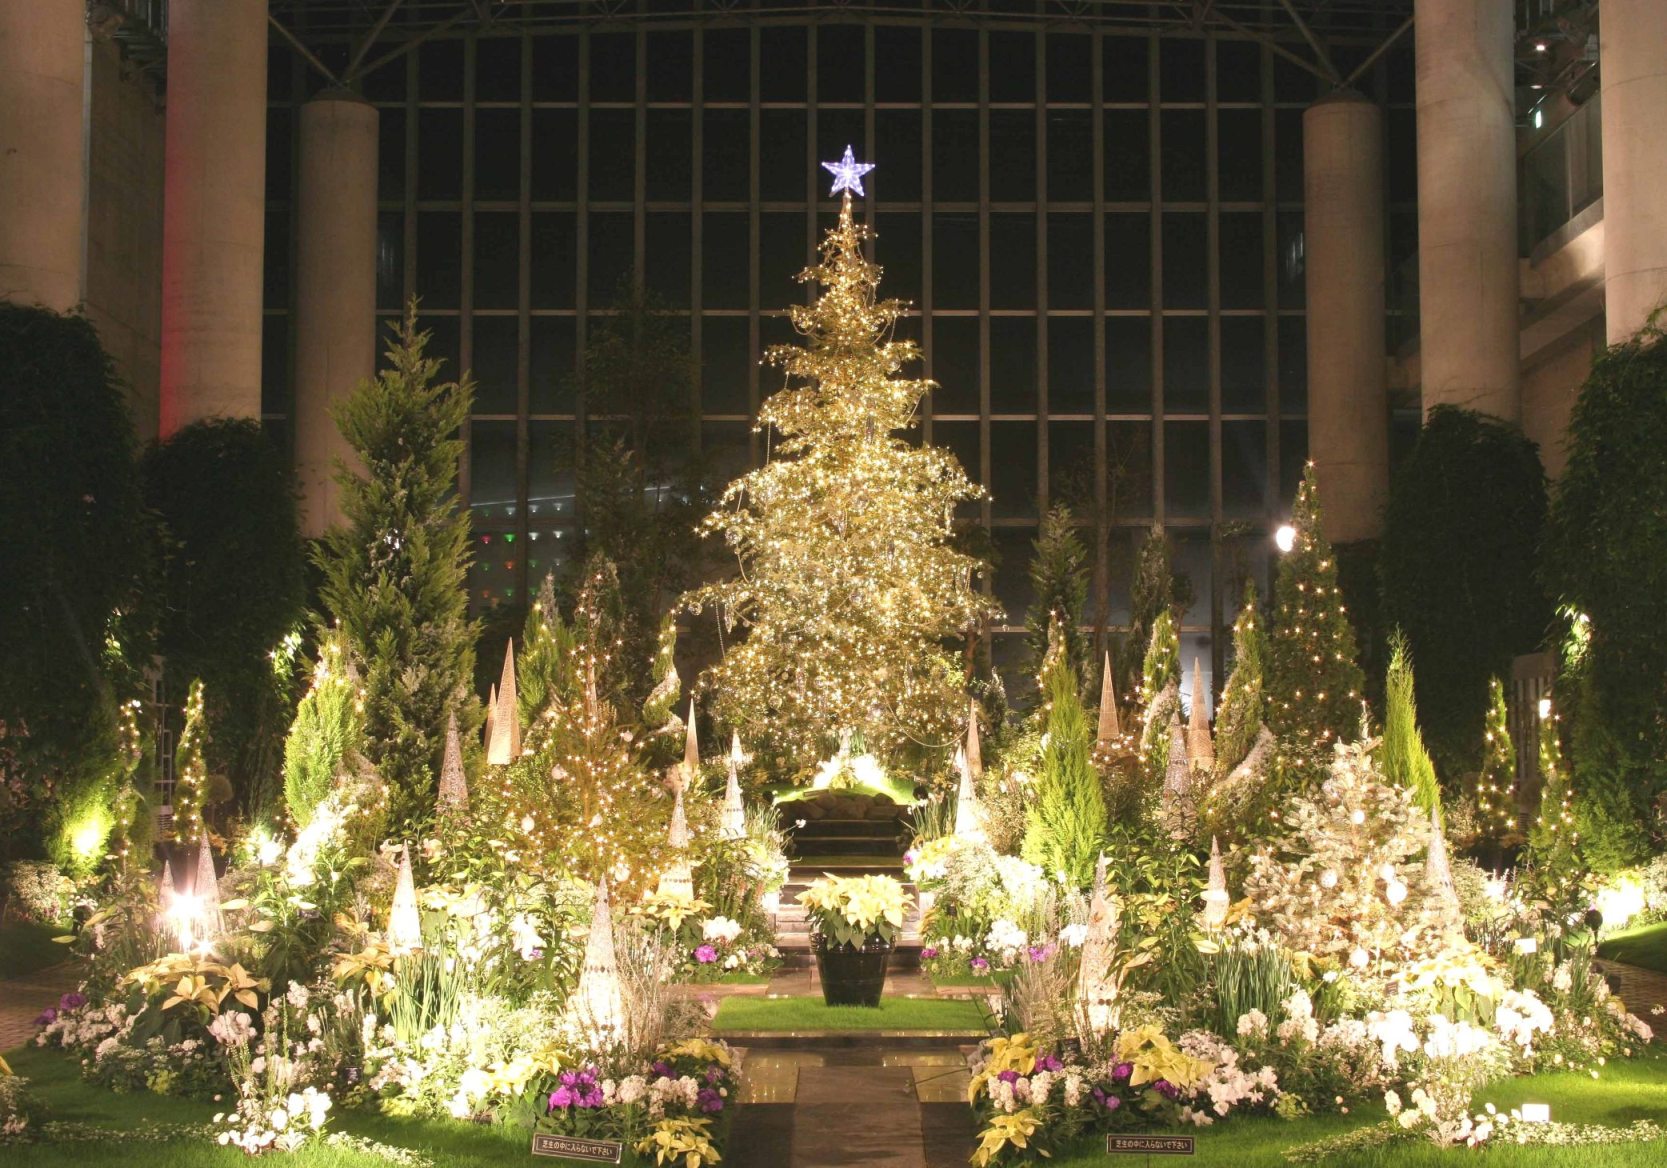 メリークリスマス 奇跡の星の植物園 Miyorinの秘密のお庭